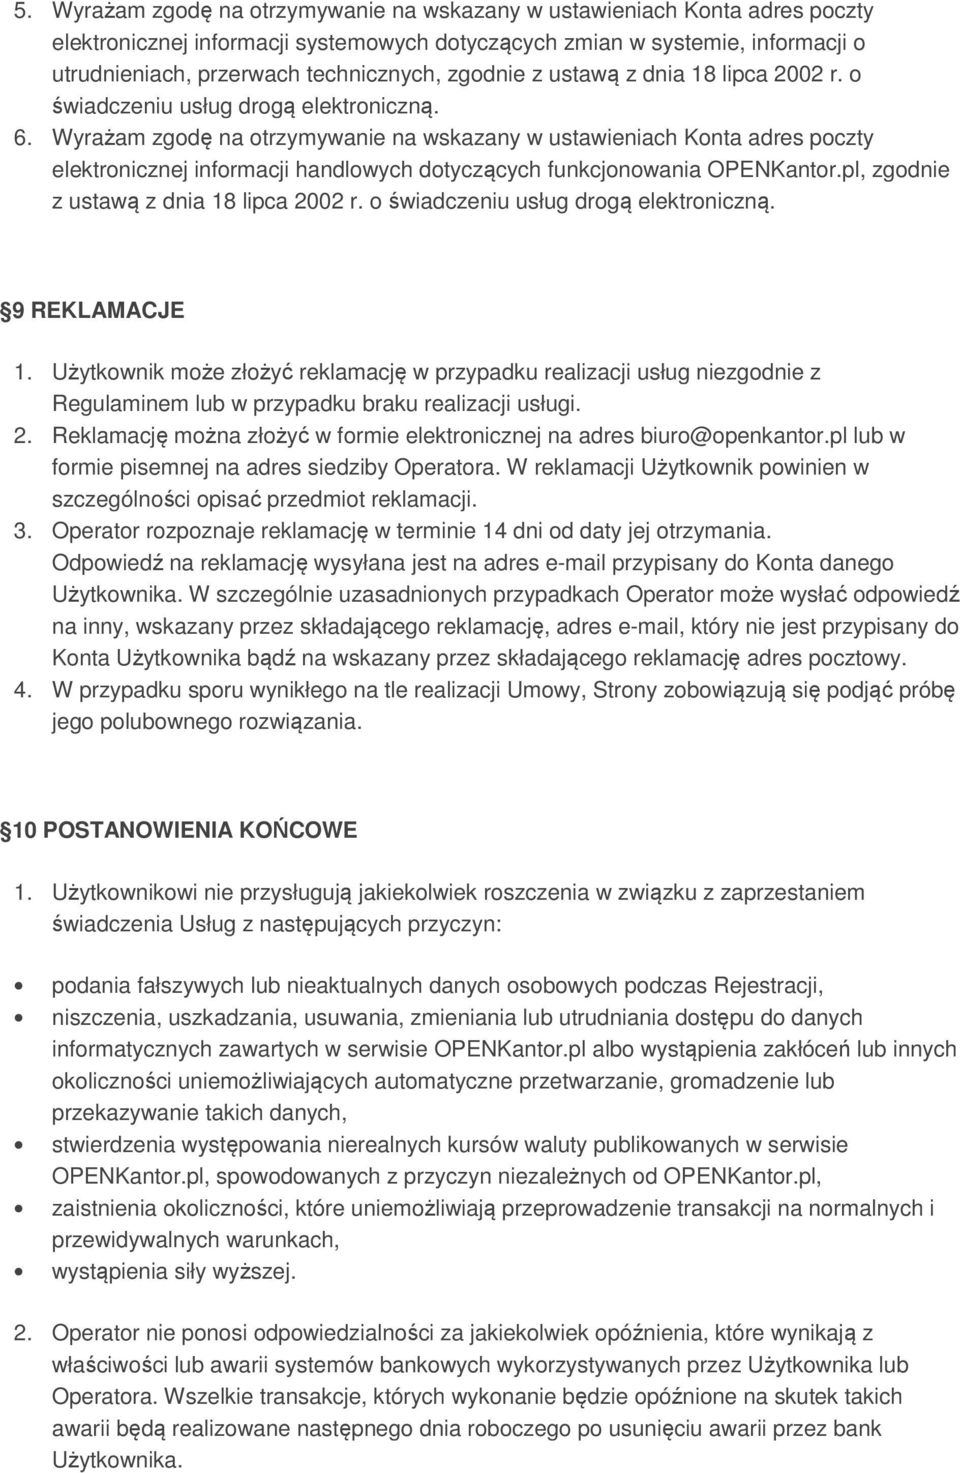 Wyrażam zgodę na otrzymywanie na wskazany w ustawieniach Konta adres poczty elektronicznej informacji handlowych dotyczących funkcjonowania OPENKantor.pl, zgodnie z ustawą z dnia 18 lipca 2002 r.